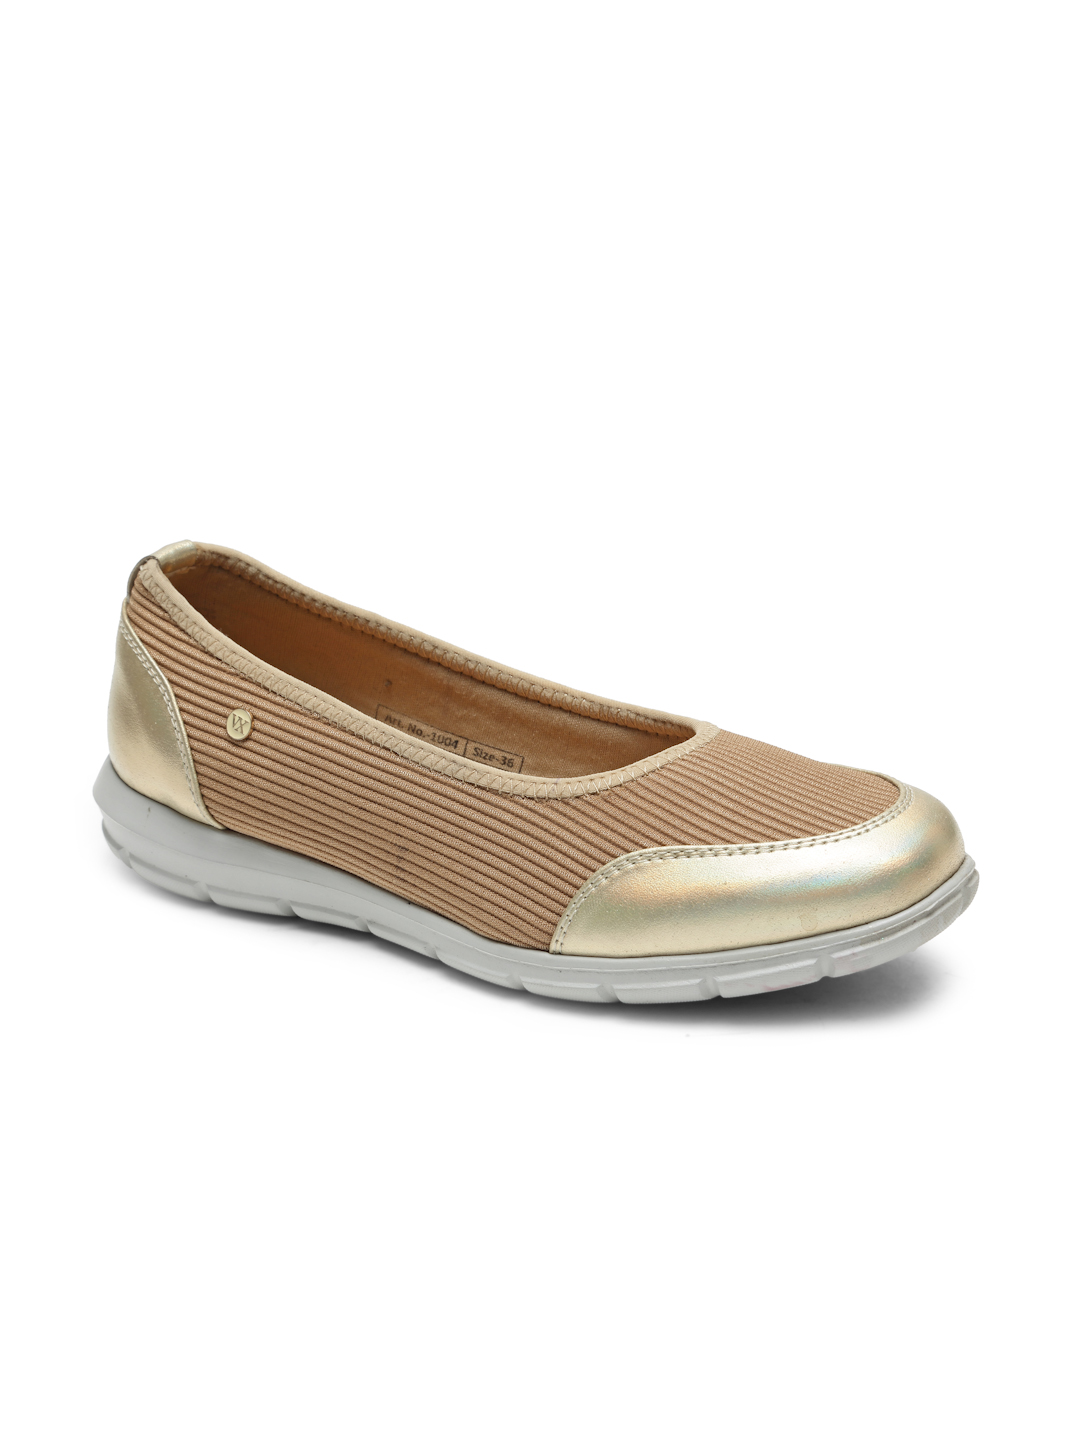 Buy Von Wellx Germany Comfort Women's Beige Casual Shoes Alice Online in Doha